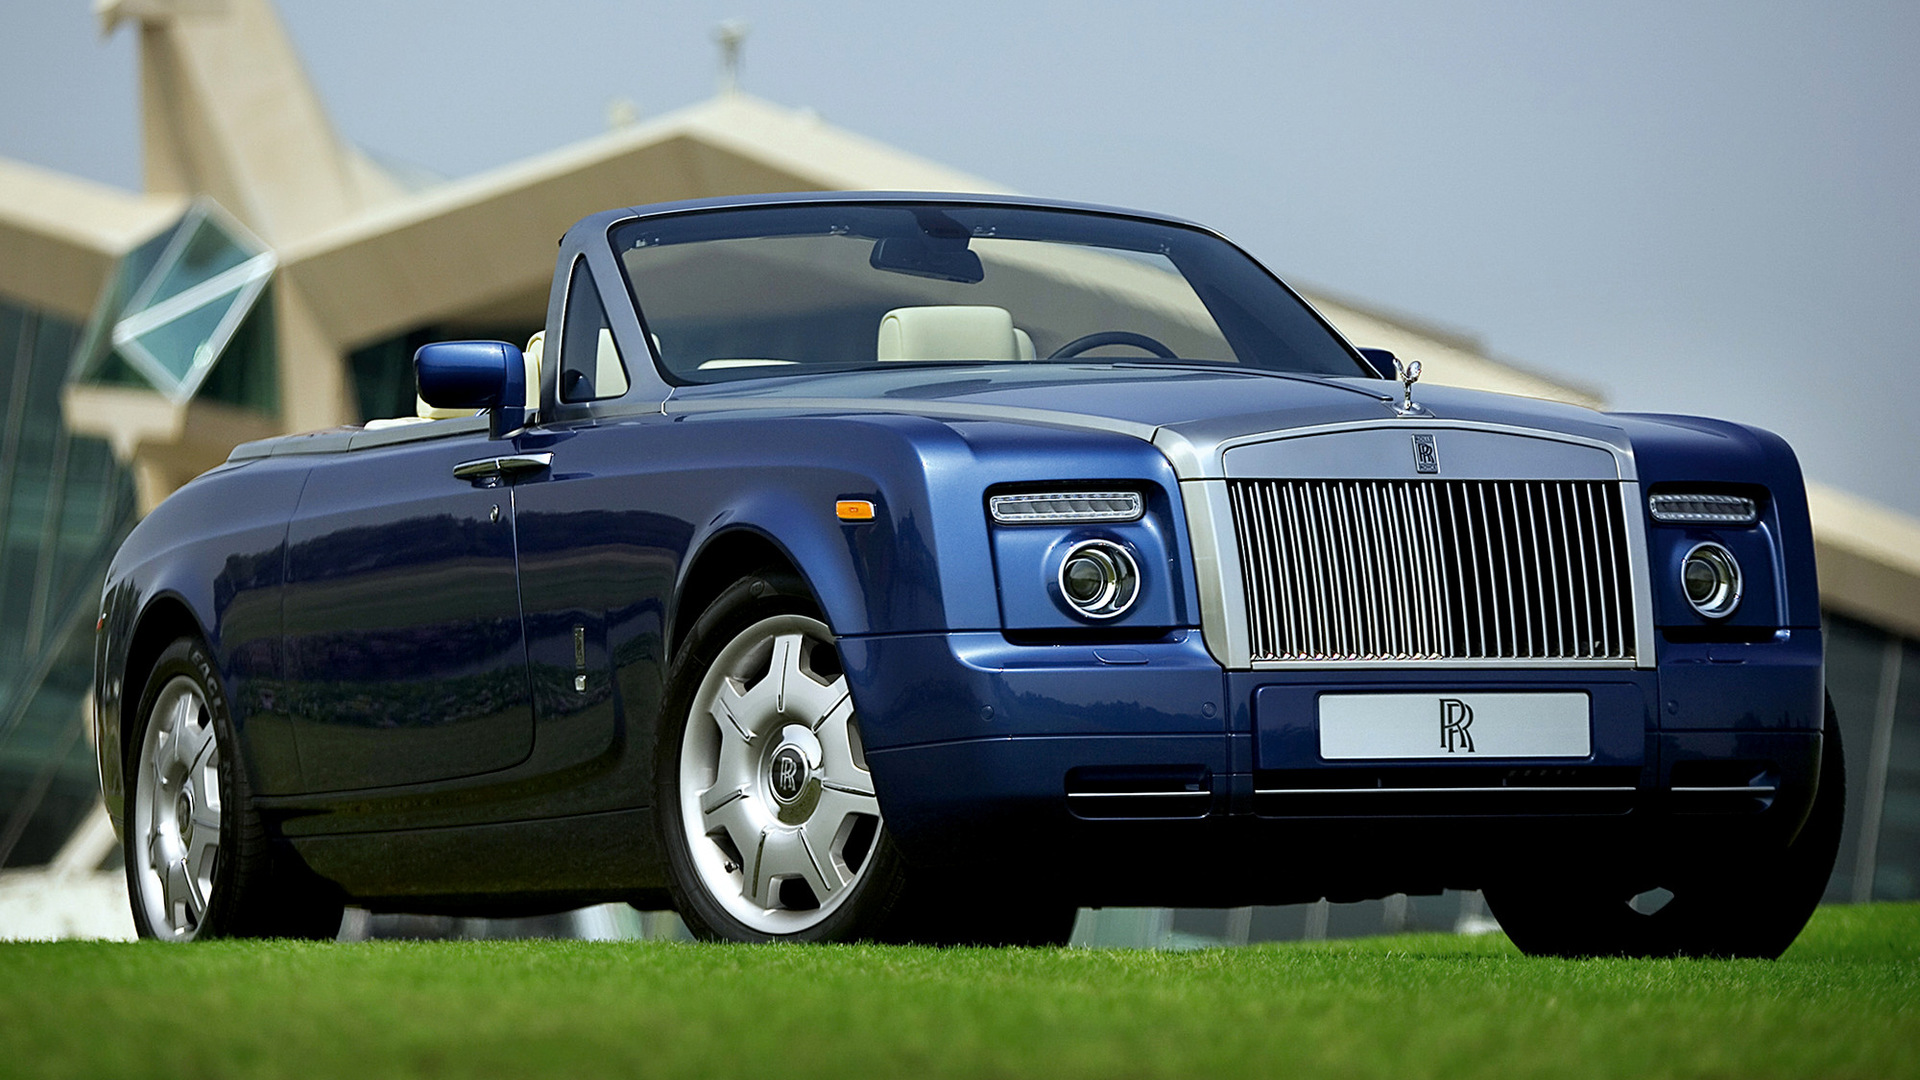 Скачать обои Rolls Royce Phantom Drophead Coupe на телефон бесплатно